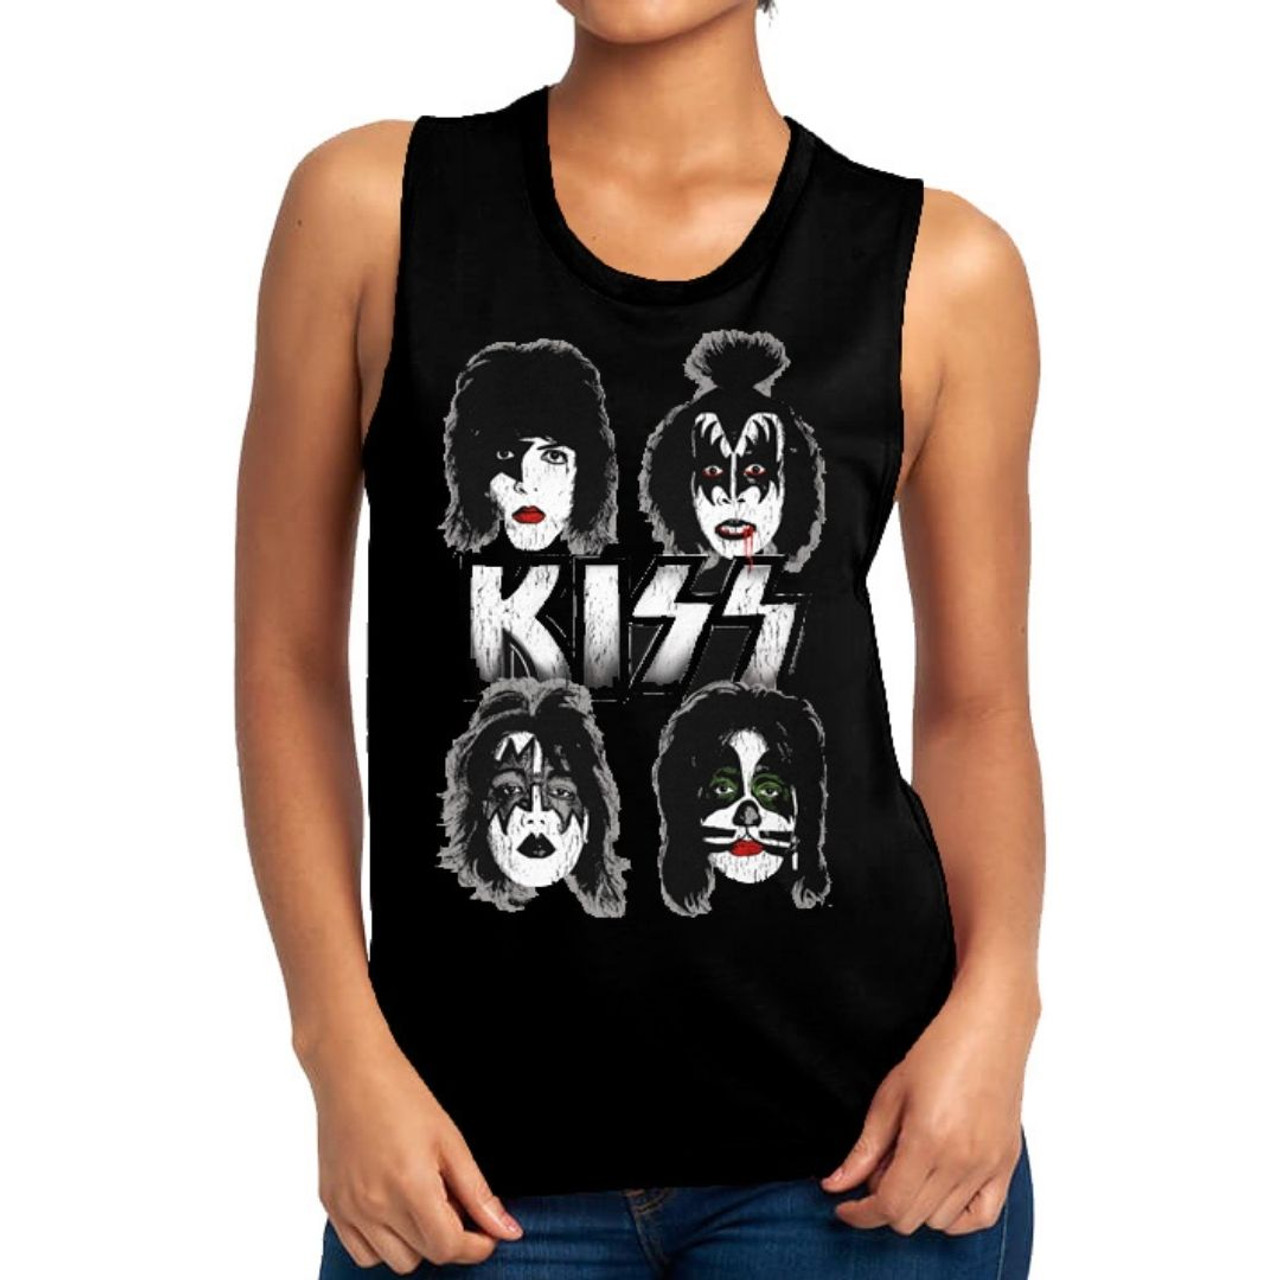 KISS Women's Fashion T-shirt - Band Member Images. Muscle Top Shirt - Rocker Rags